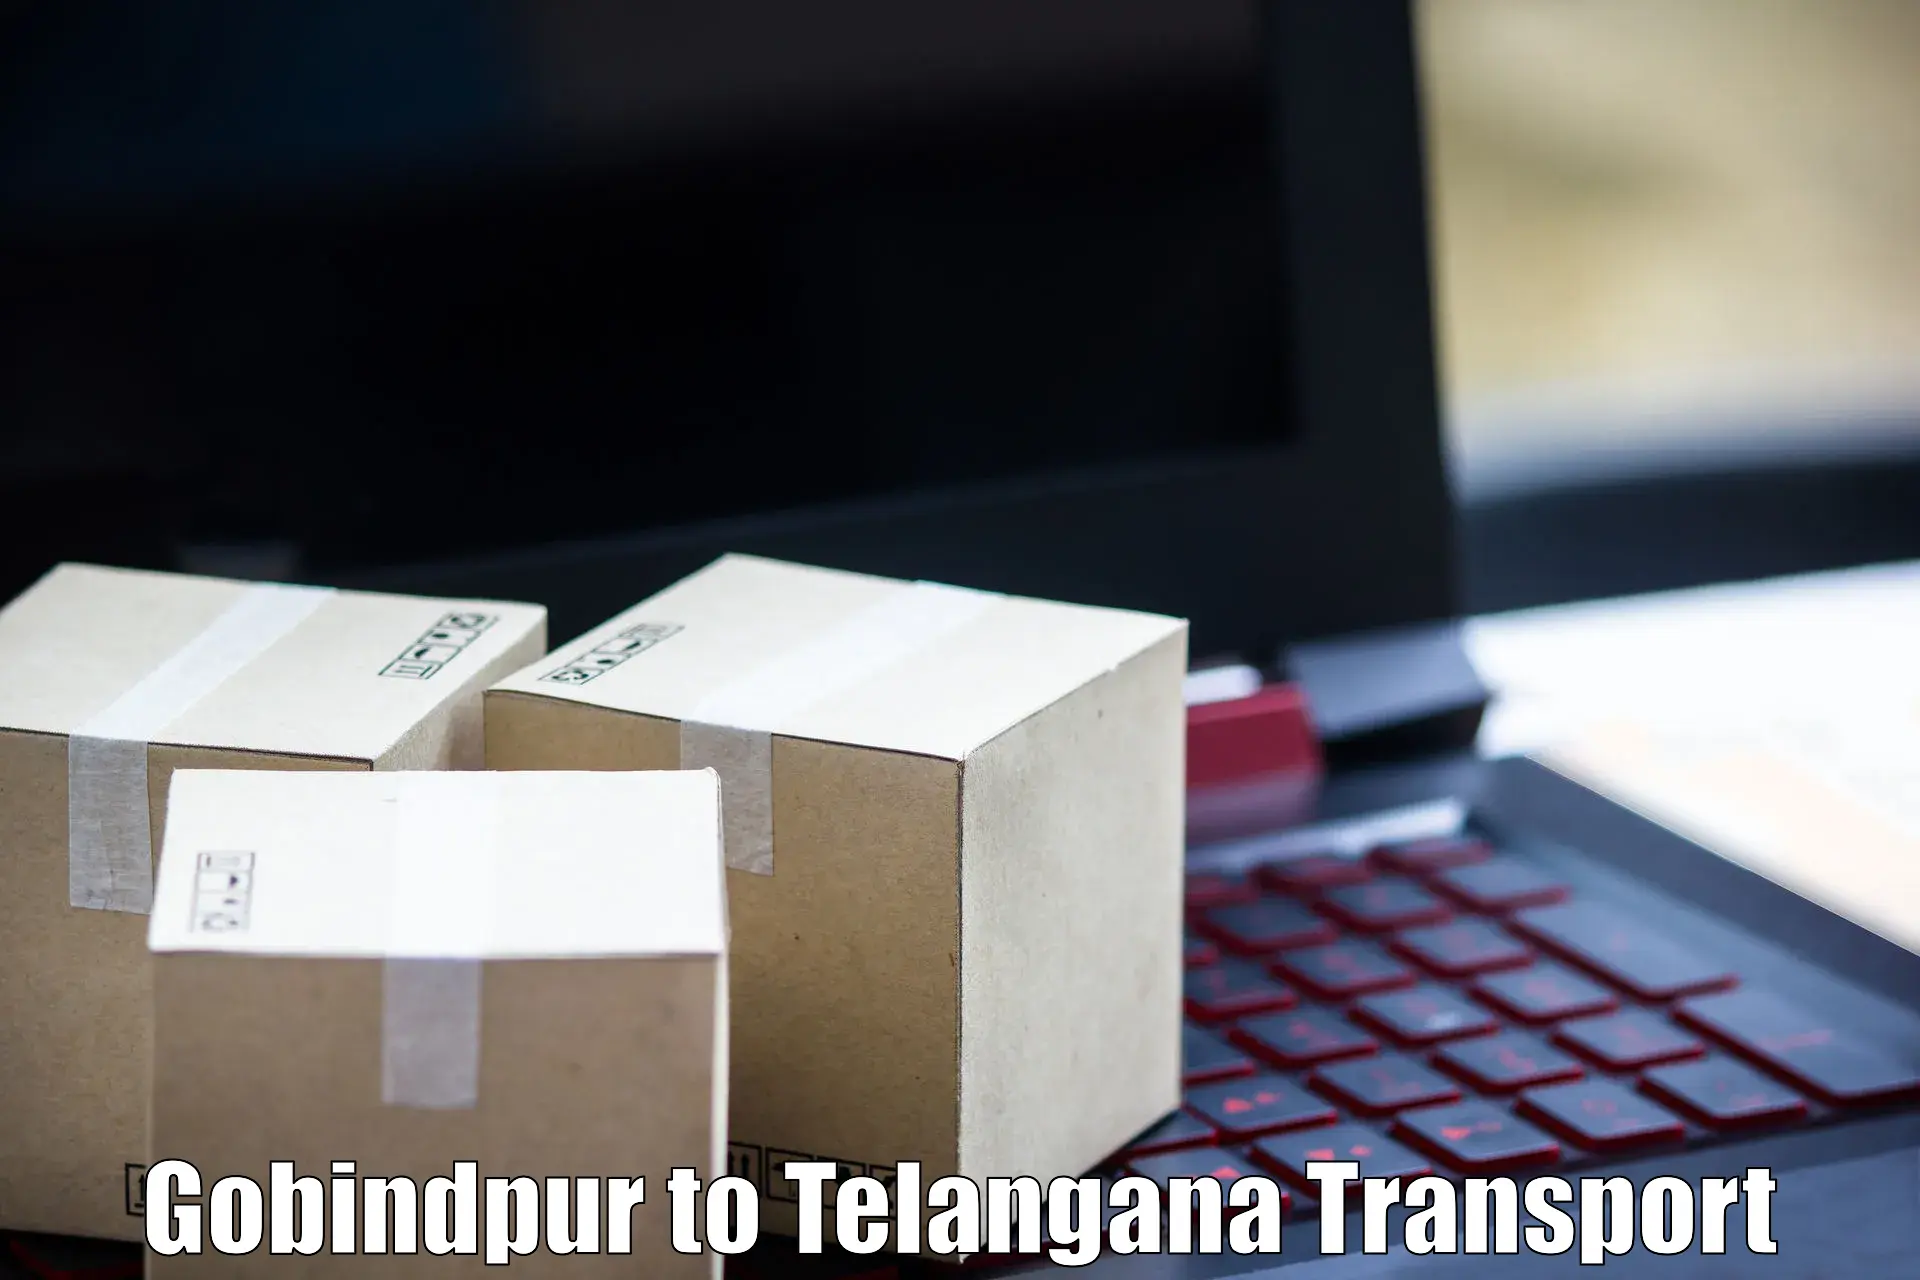 Online transport service Gobindpur to Bhainsa